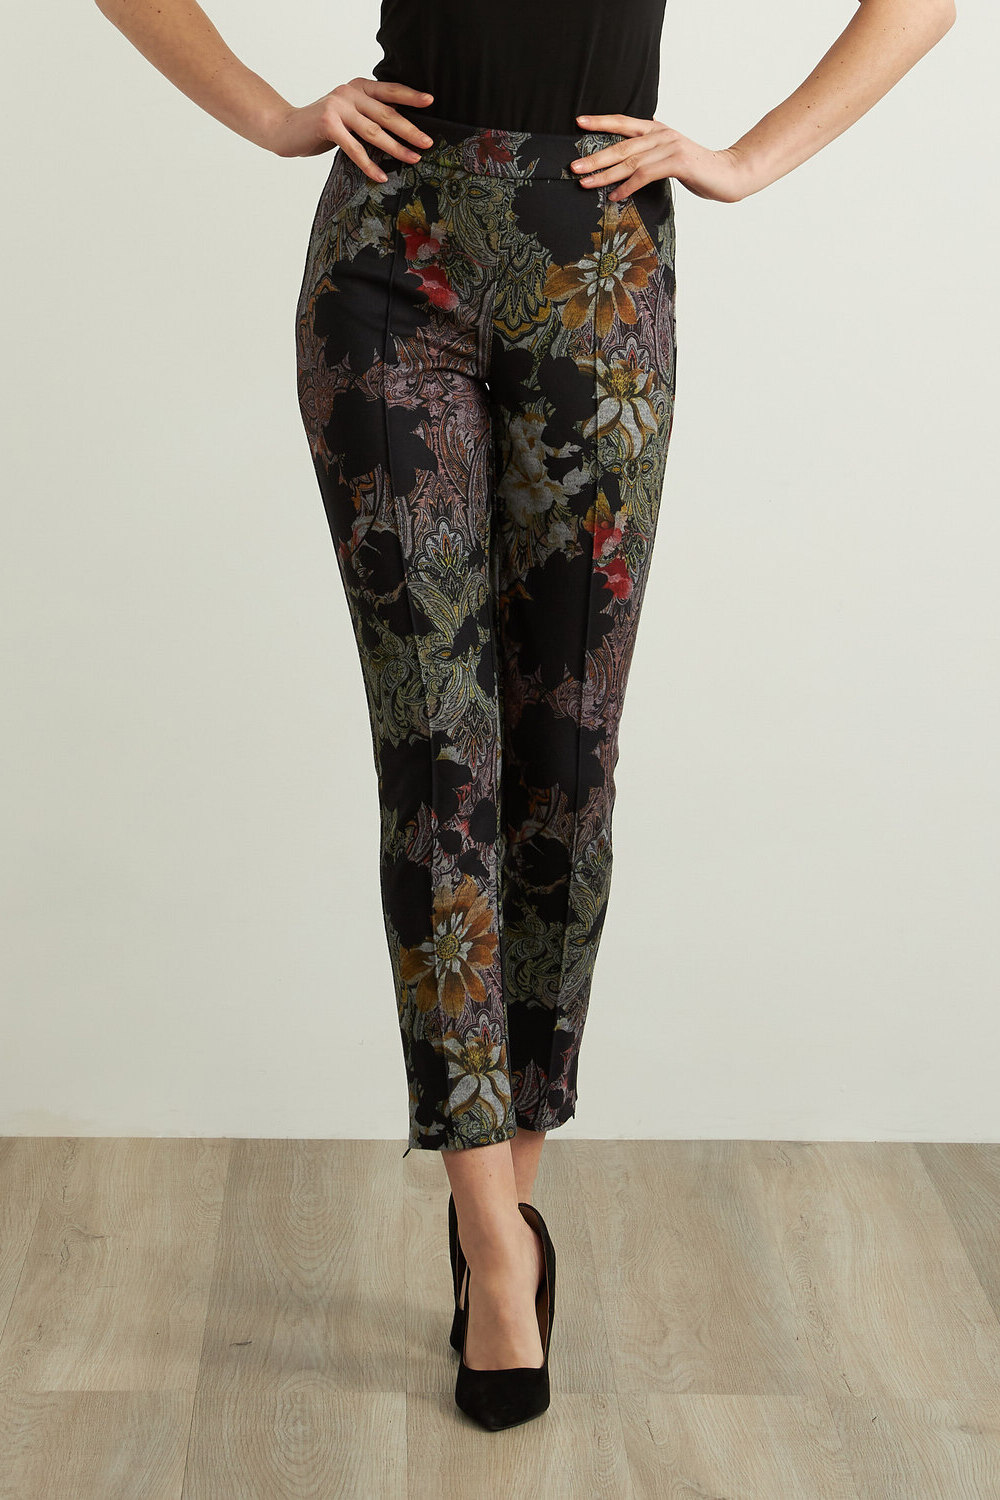 Joseph Ribkoff Pantalon à motif floral et paisley modèle 213645. Noir/multi